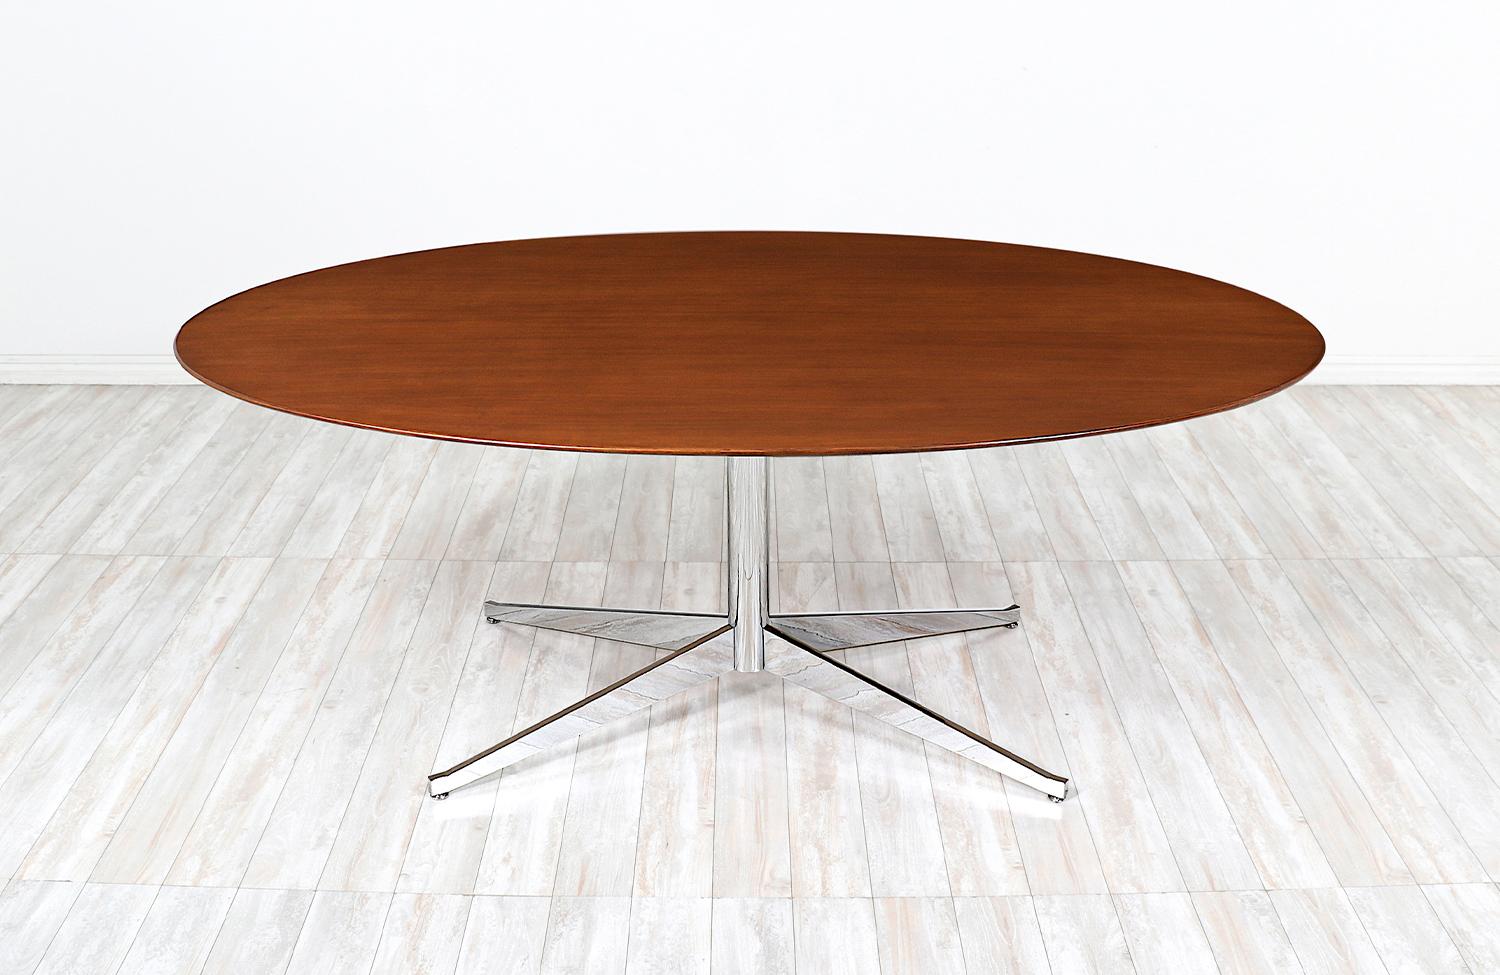 Vielseitiger Tisch, entworfen von Florence Knoll für Knoll International in den Vereinigten Staaten, ca. 1960er Jahre. Dieses ikonische Design zeichnet sich durch eine ovale Platte aus massivem Walnussholz aus, die auf einem verchromten